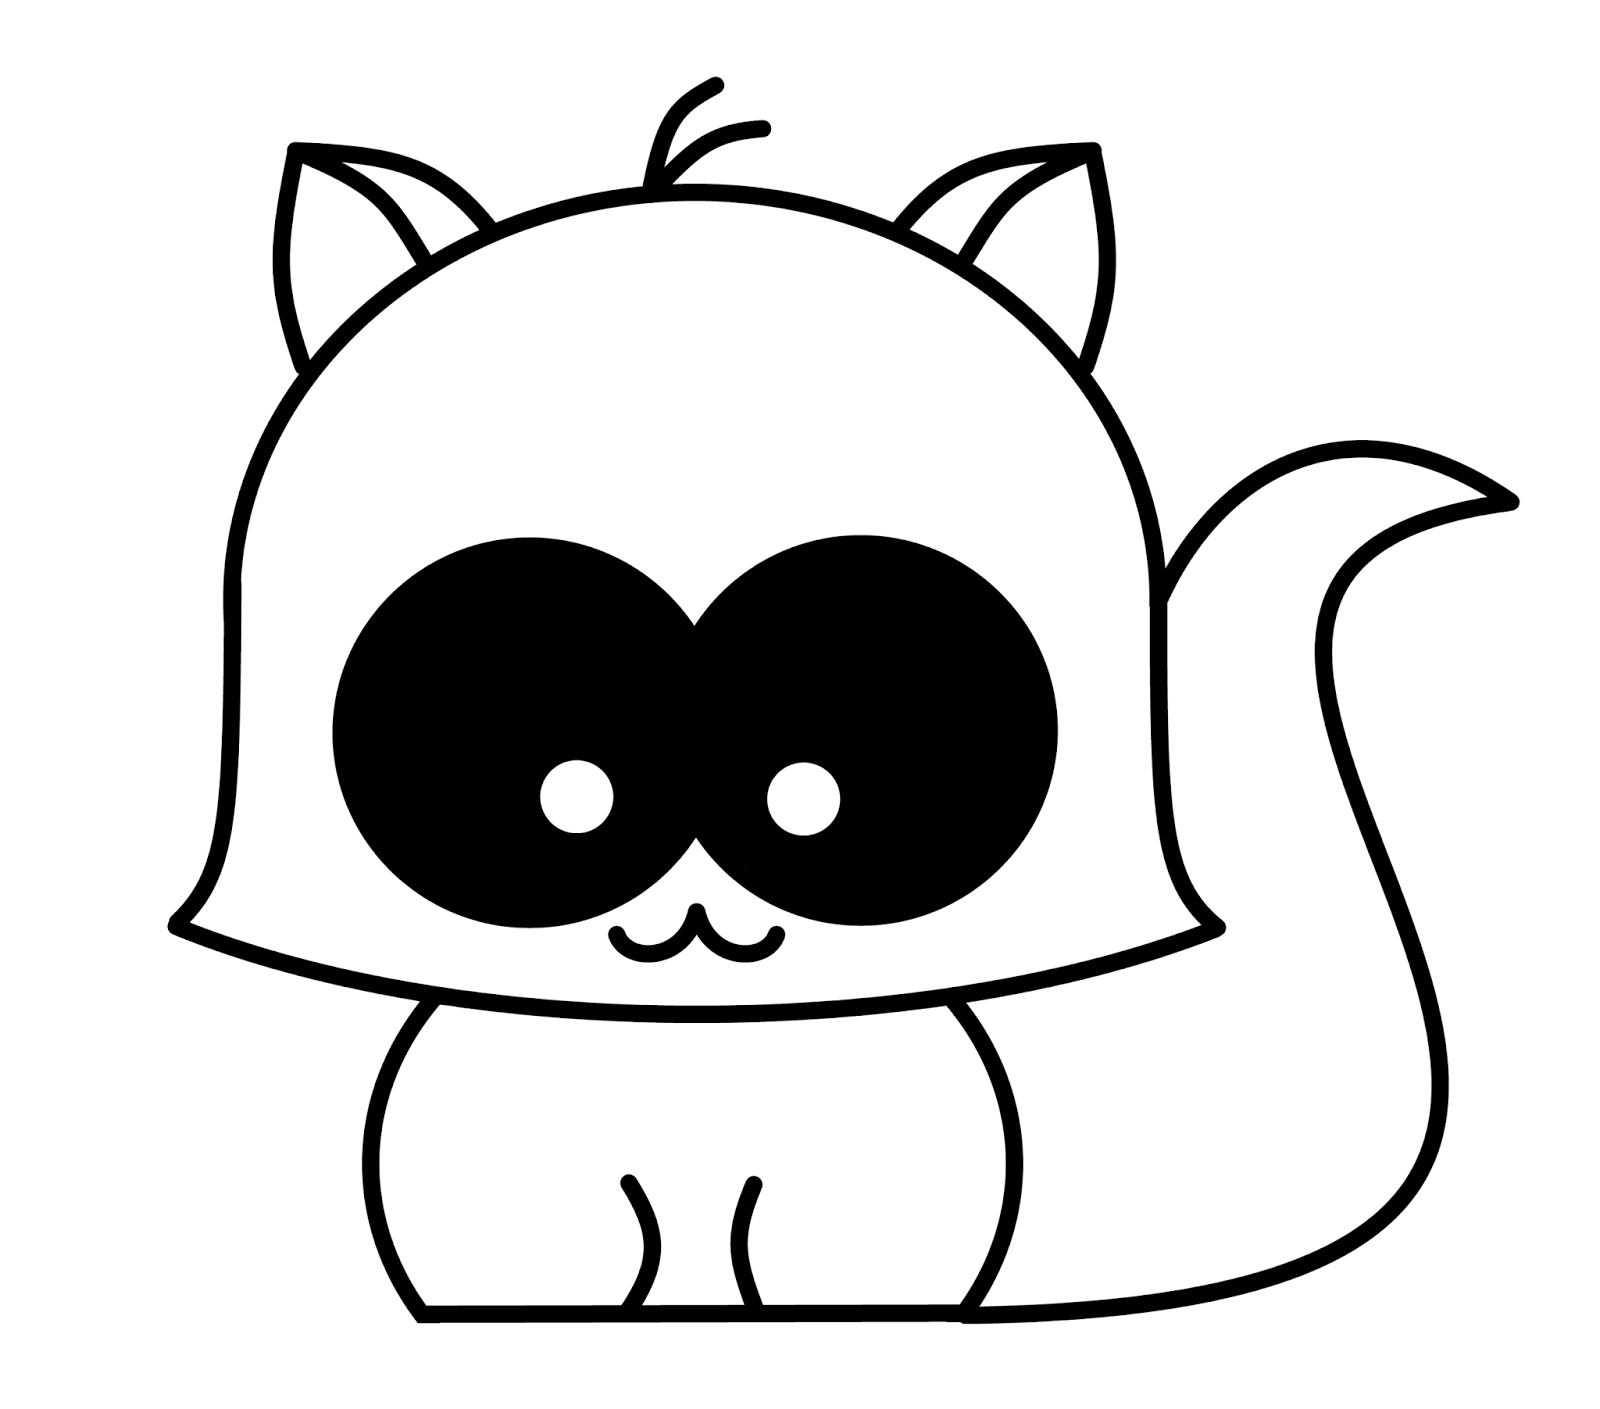 Cute N Kawaii: How To Draw A Kawaii Raccoon